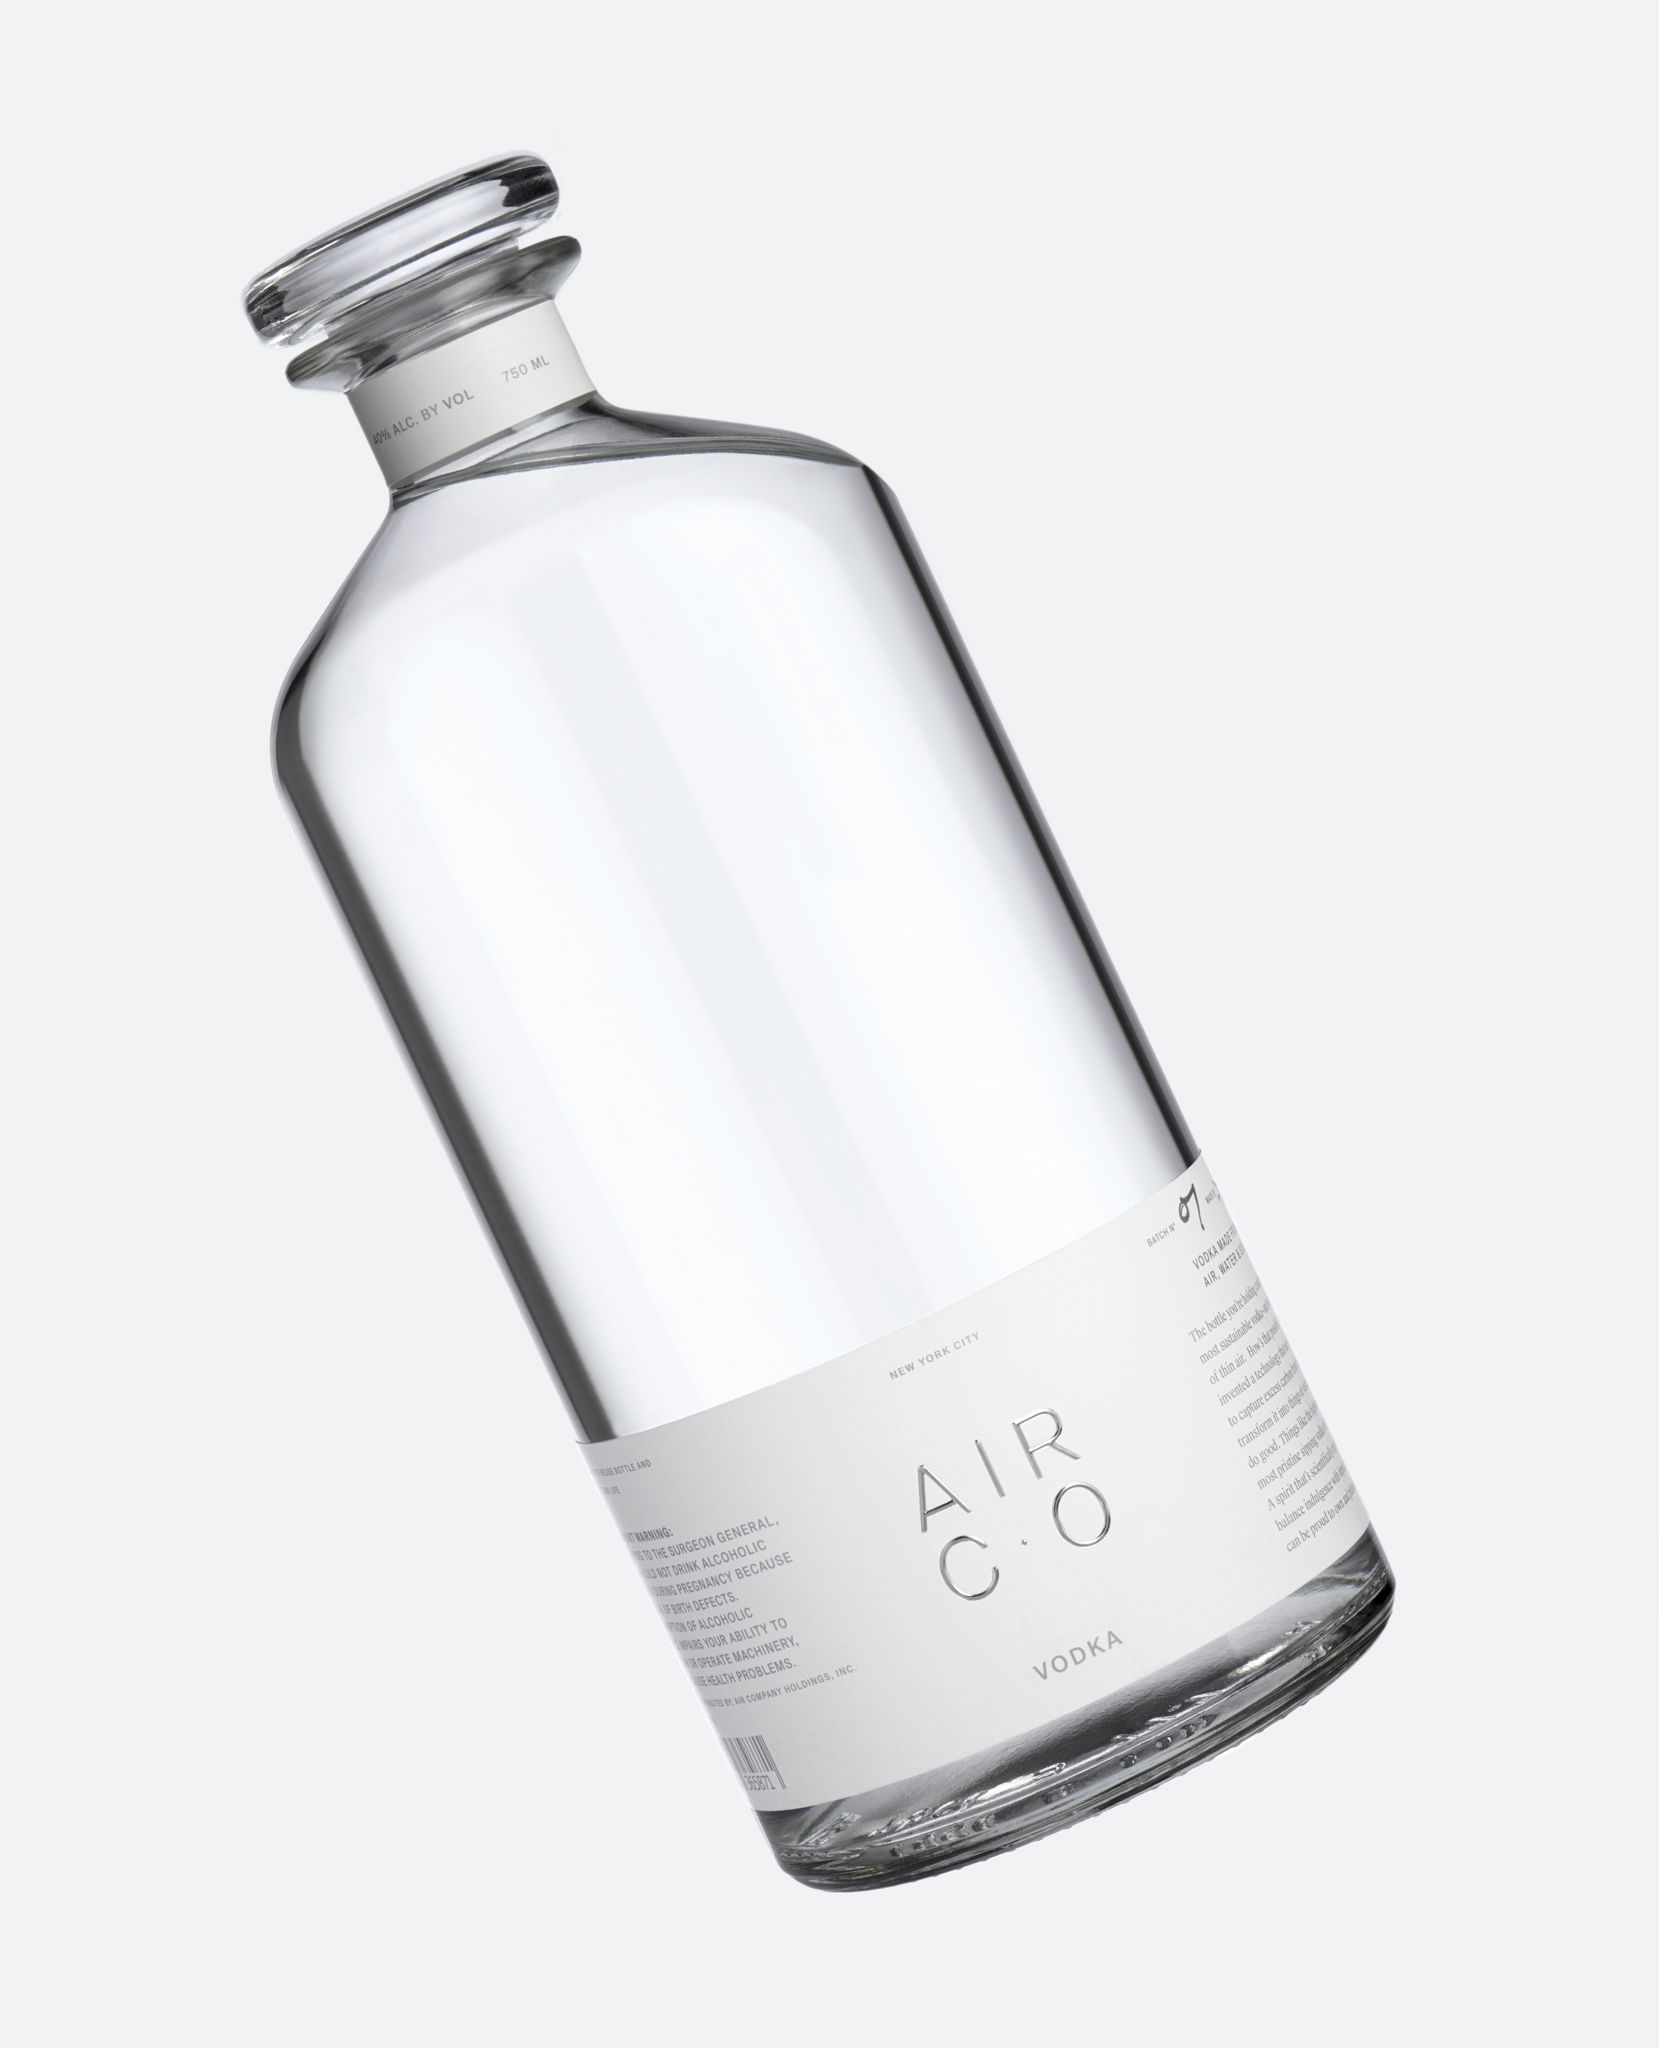 20款国外创意酒瓶瓶型设计作品赏析 